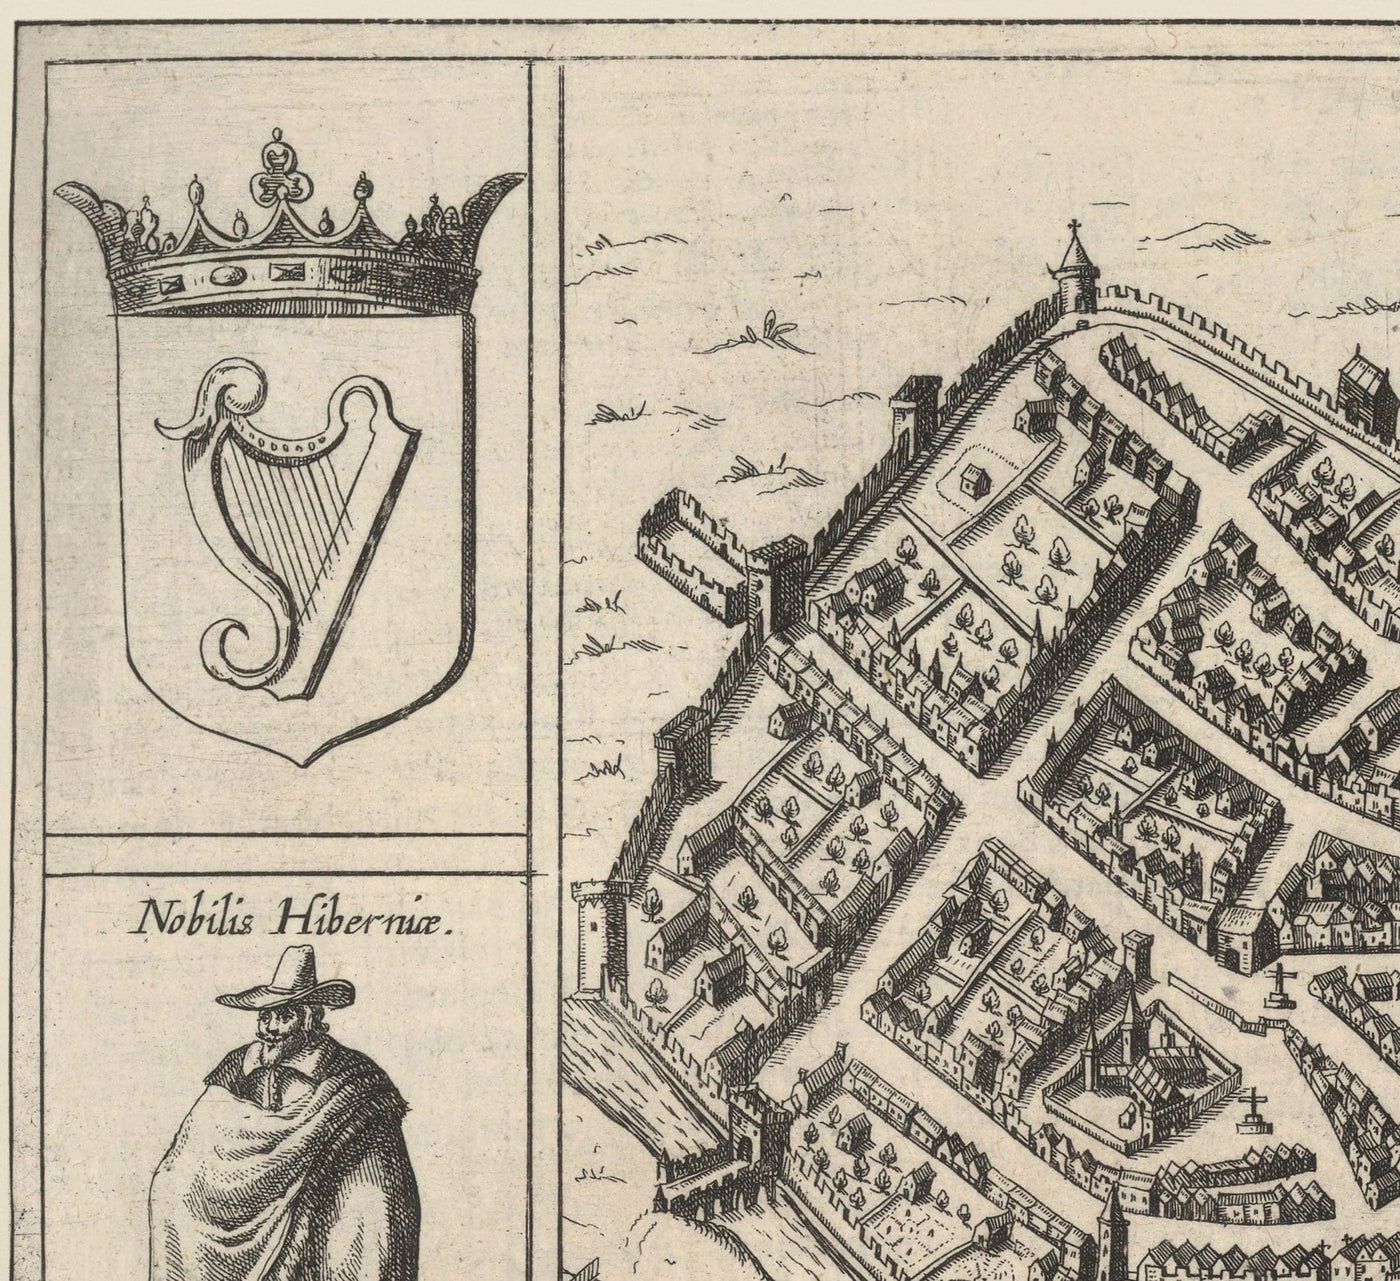 Alte Karte von Dublin, Limerick, Kork und Galway im Jahre 1618 von Georg Braun - Ancient Eire City Charts